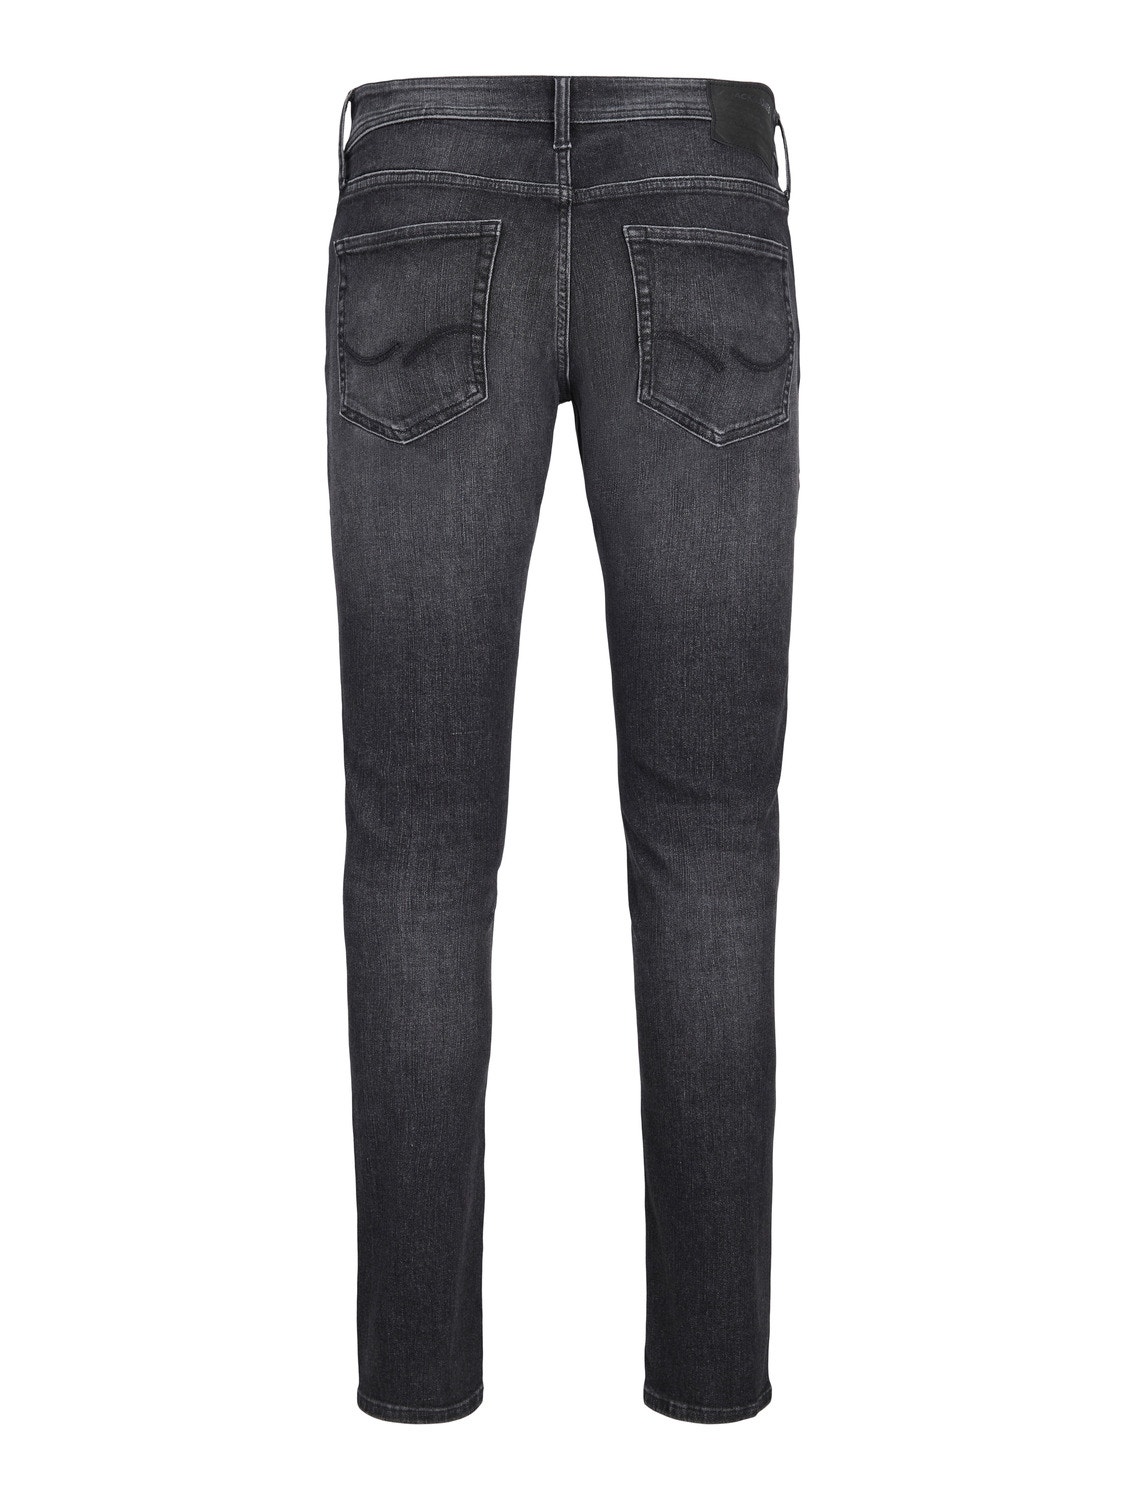 Jack & Jones Plus Size JJIMIKE JJORIGINAL SQ 270  PLS Jeans tapered fit -Black Denim - 12245644